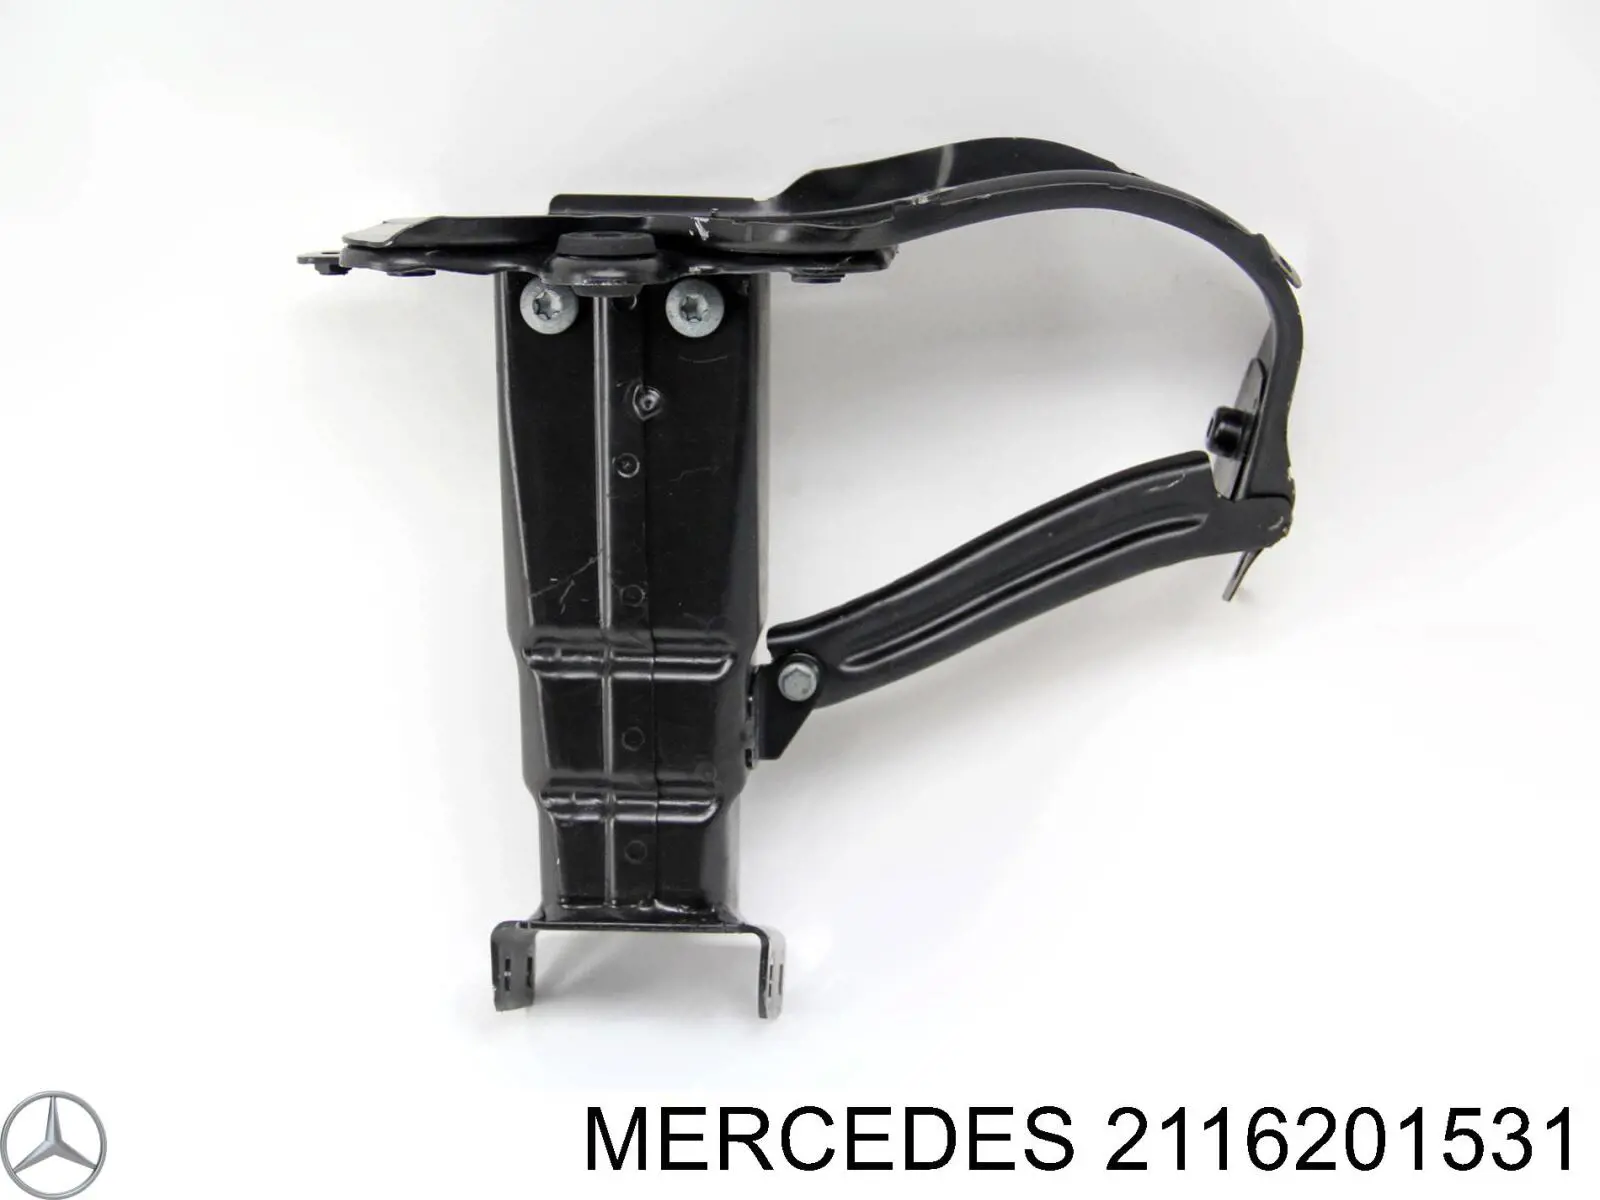 2116201531 Mercedes суппорт радиатора левый (монтажная панель крепления фар)